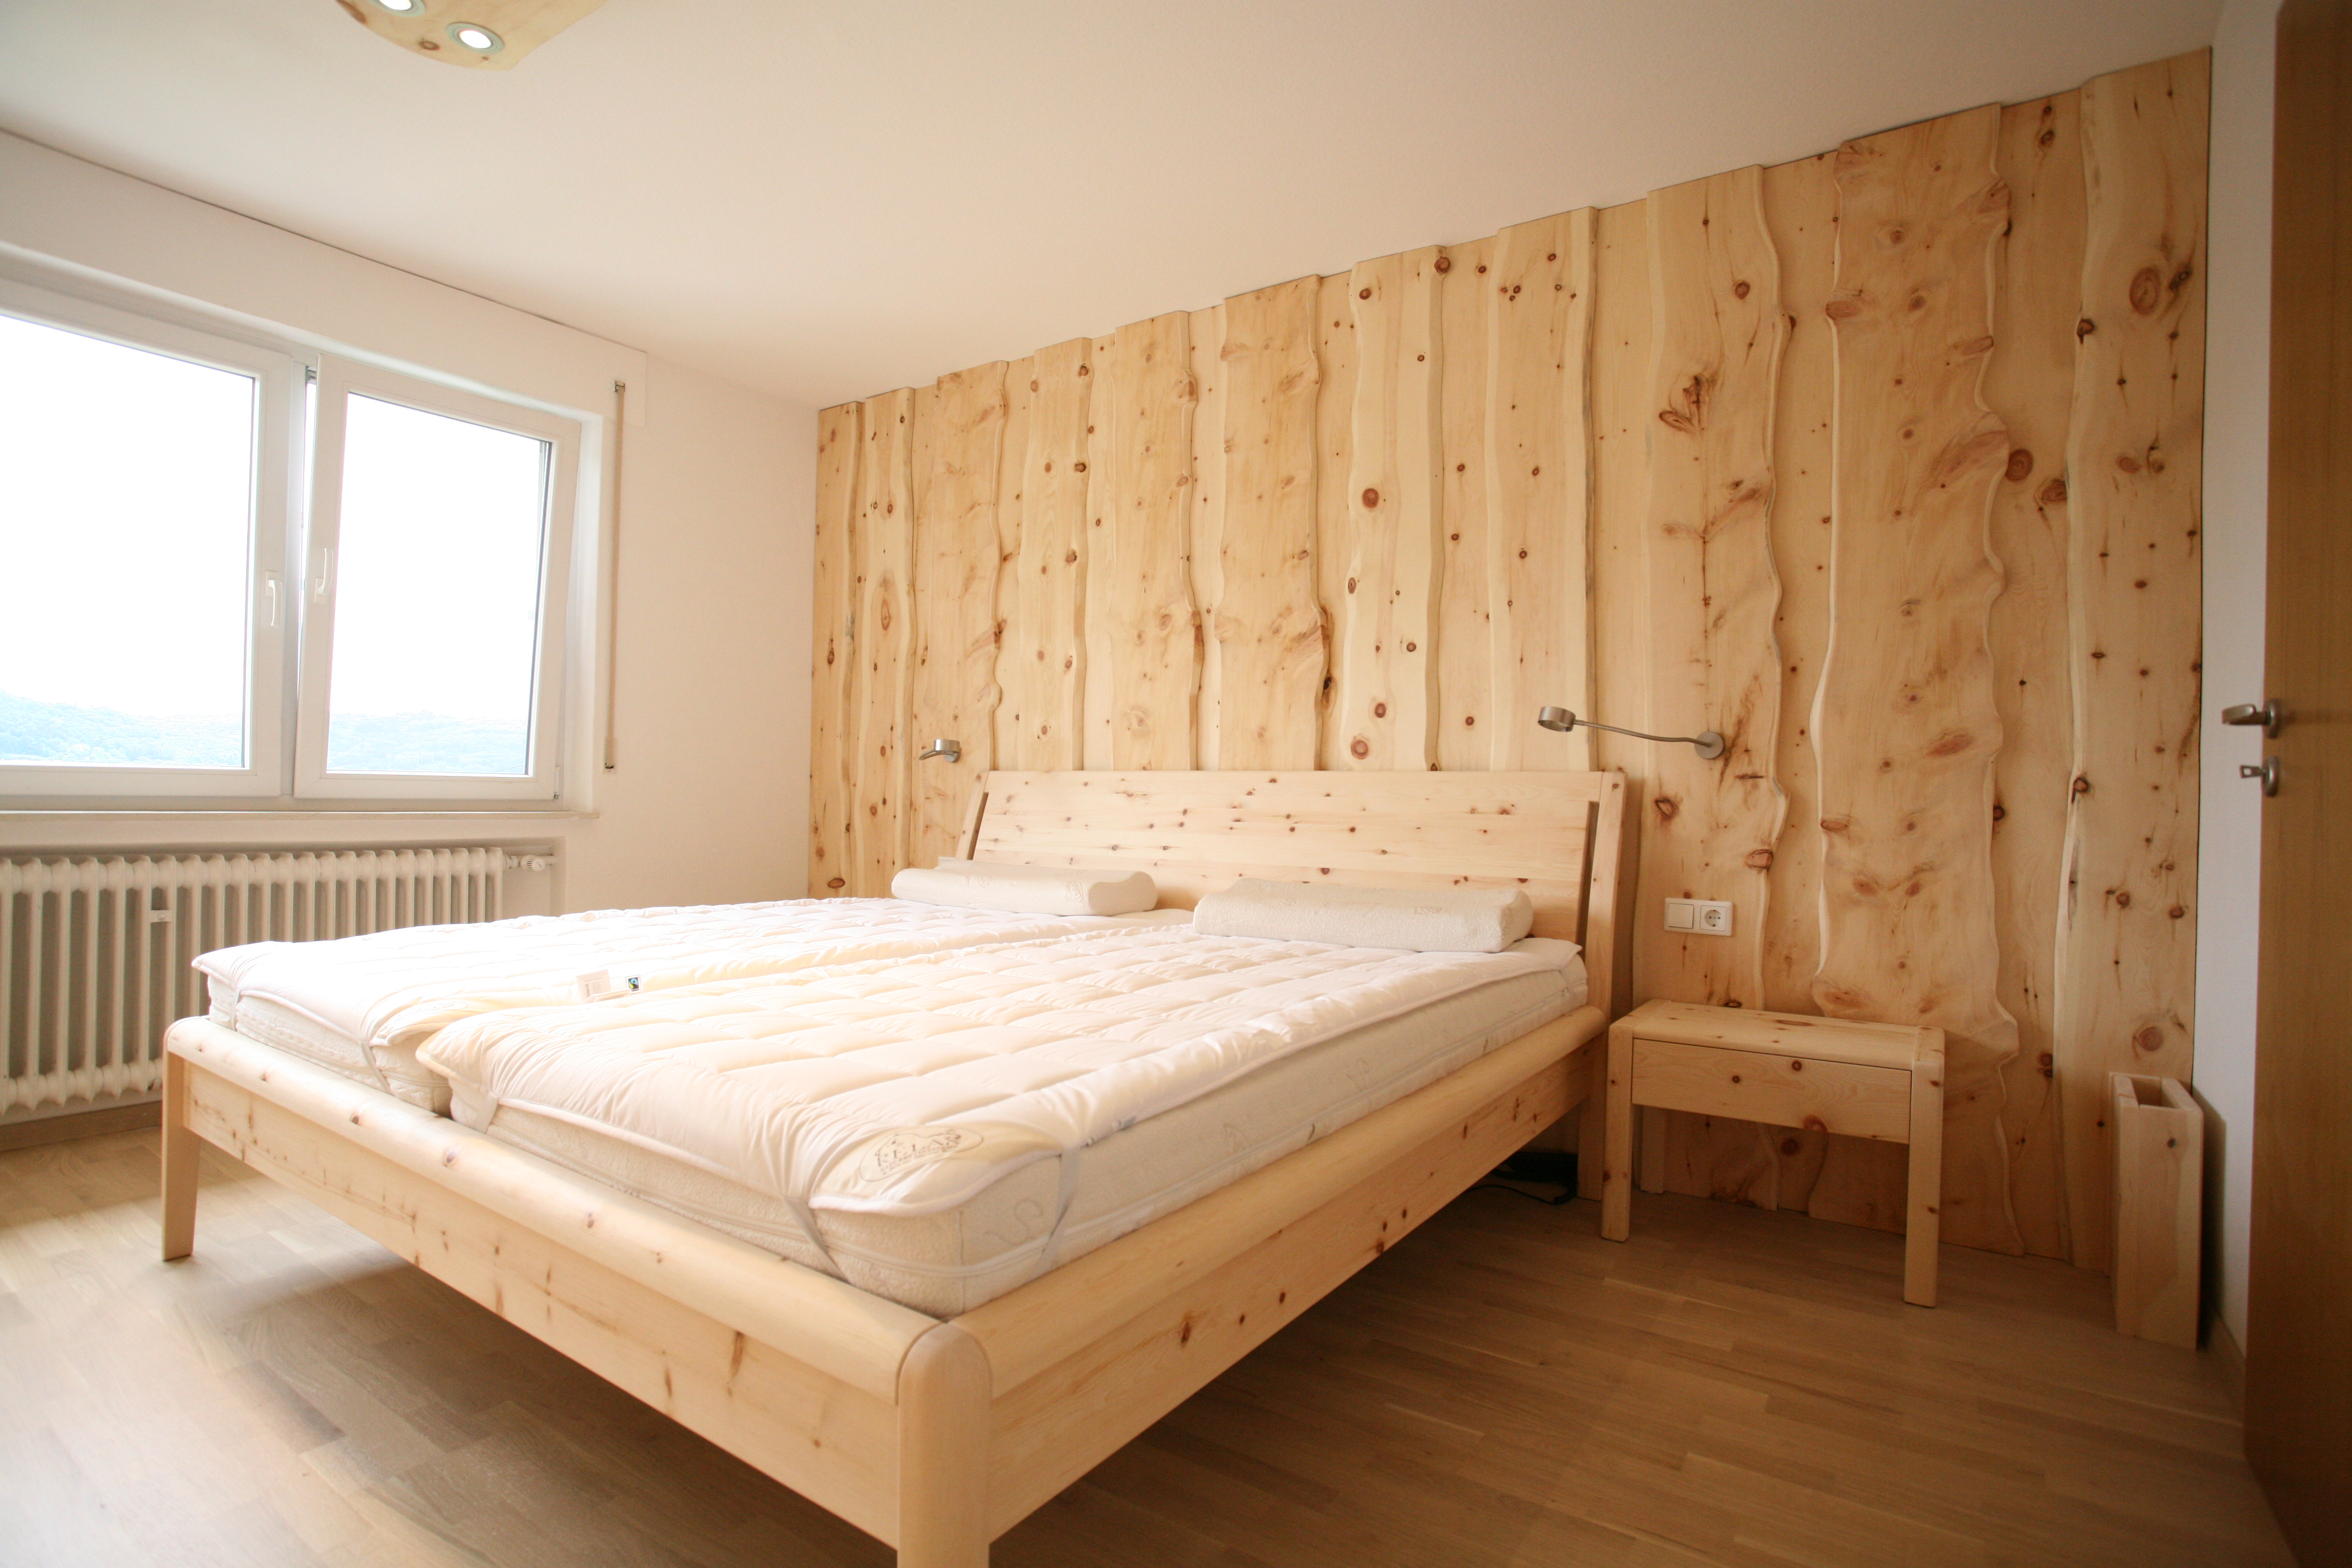 Bett, Nachtkästchen und Wandverkleidung aus Zirbenholz